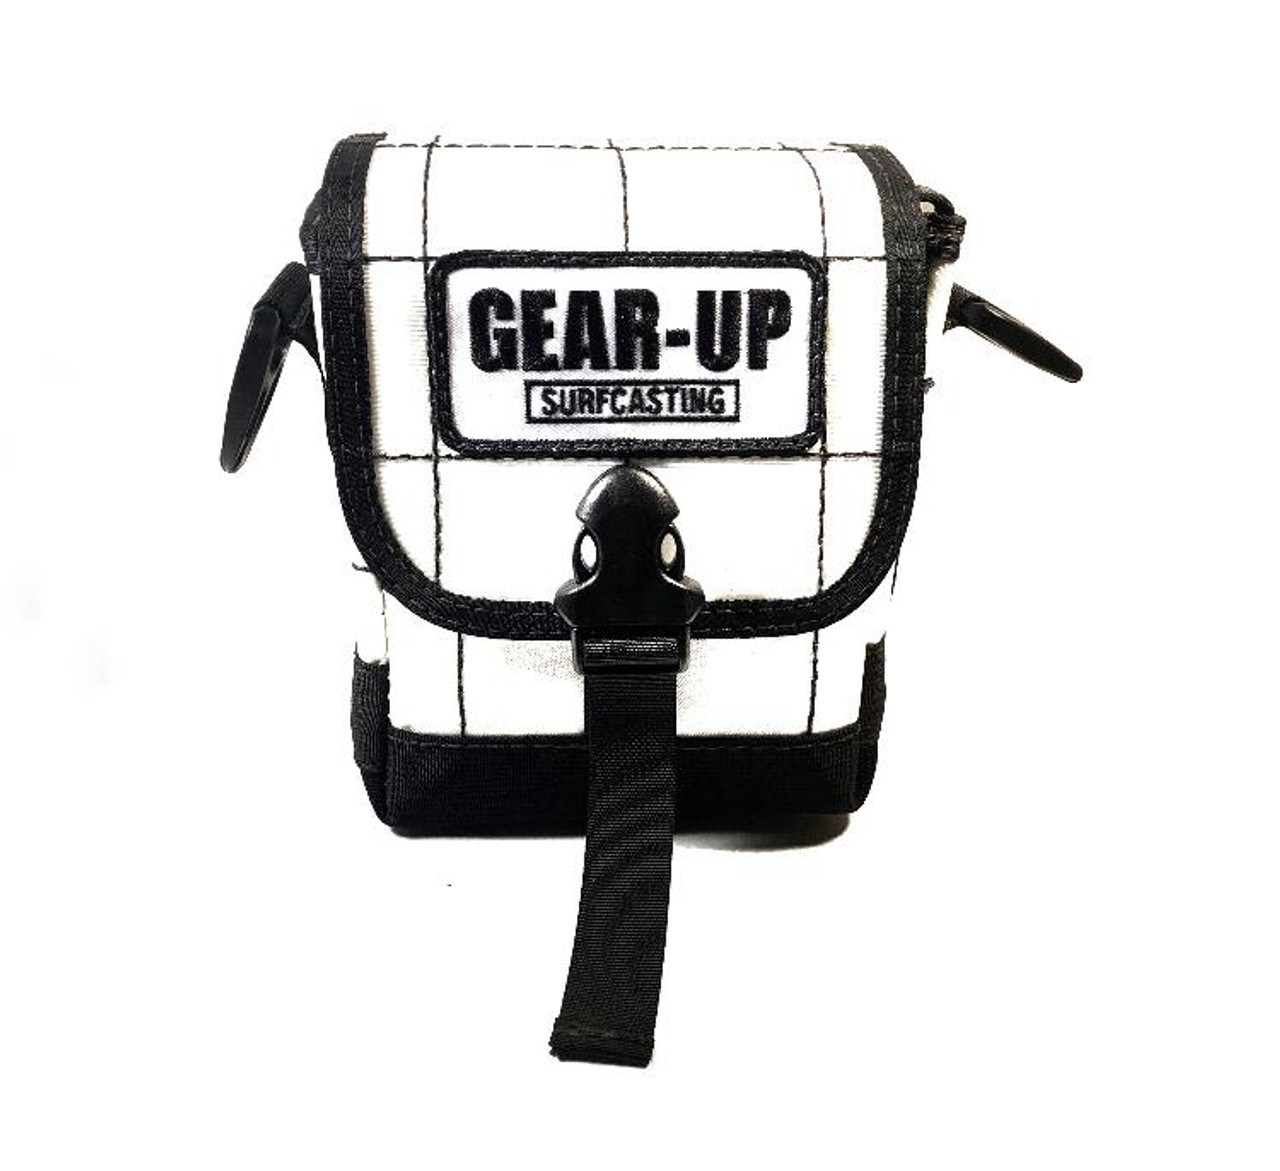 Gear-Up Surfcasting Short Surf Bag